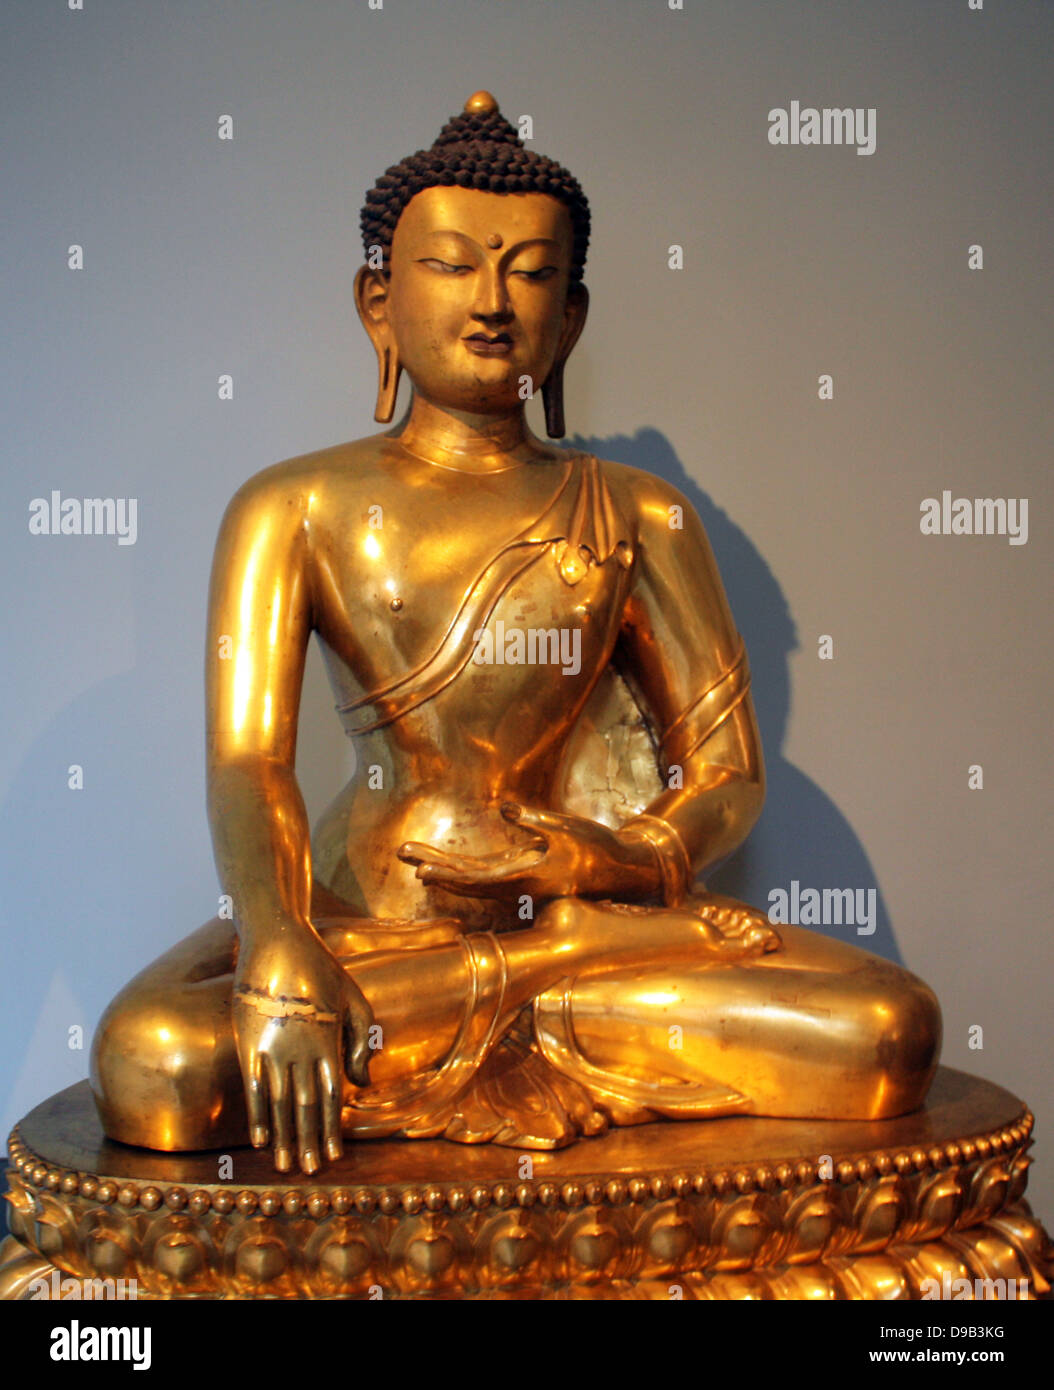 Buddha seduto, Cinese, 1740-1786 è mostrato appena prima della sua illuminazione. Rame dorato. Foto Stock